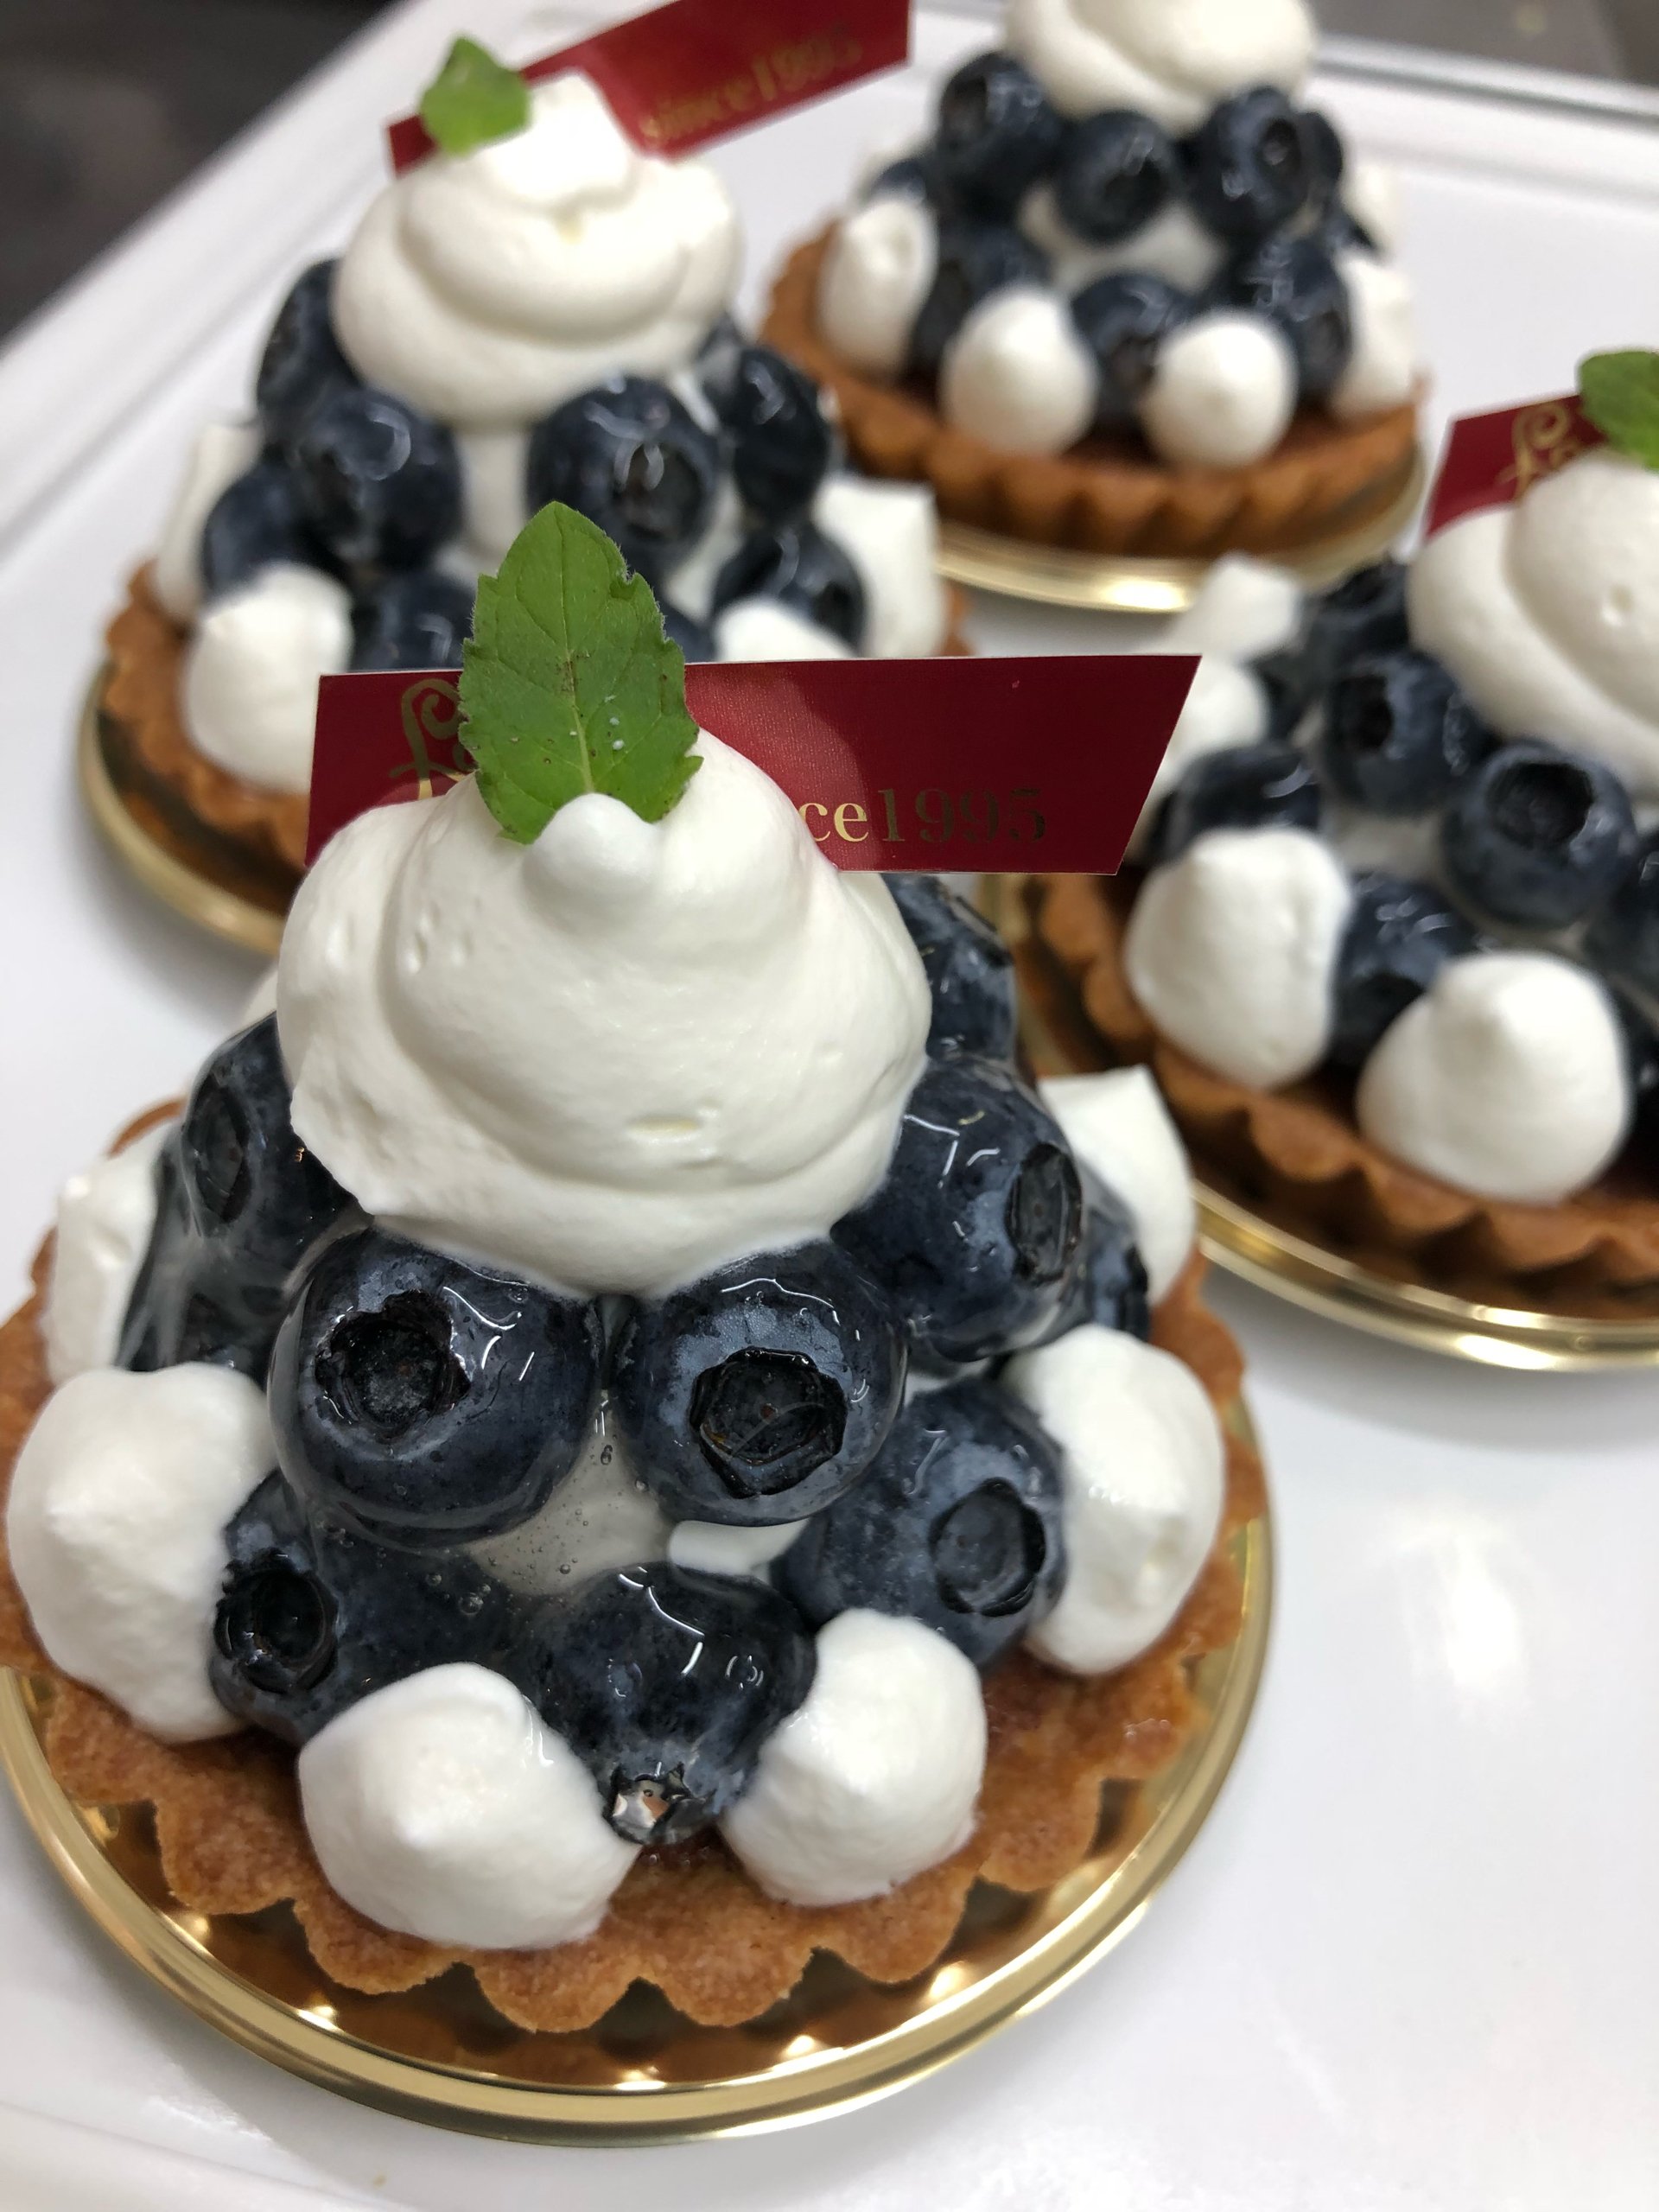 今日のタルトはブルーベリーです 18 09 16 福島市のケーキ スイーツショップ ふぁぶーる オリジナルデコレーションケーキがオススメ